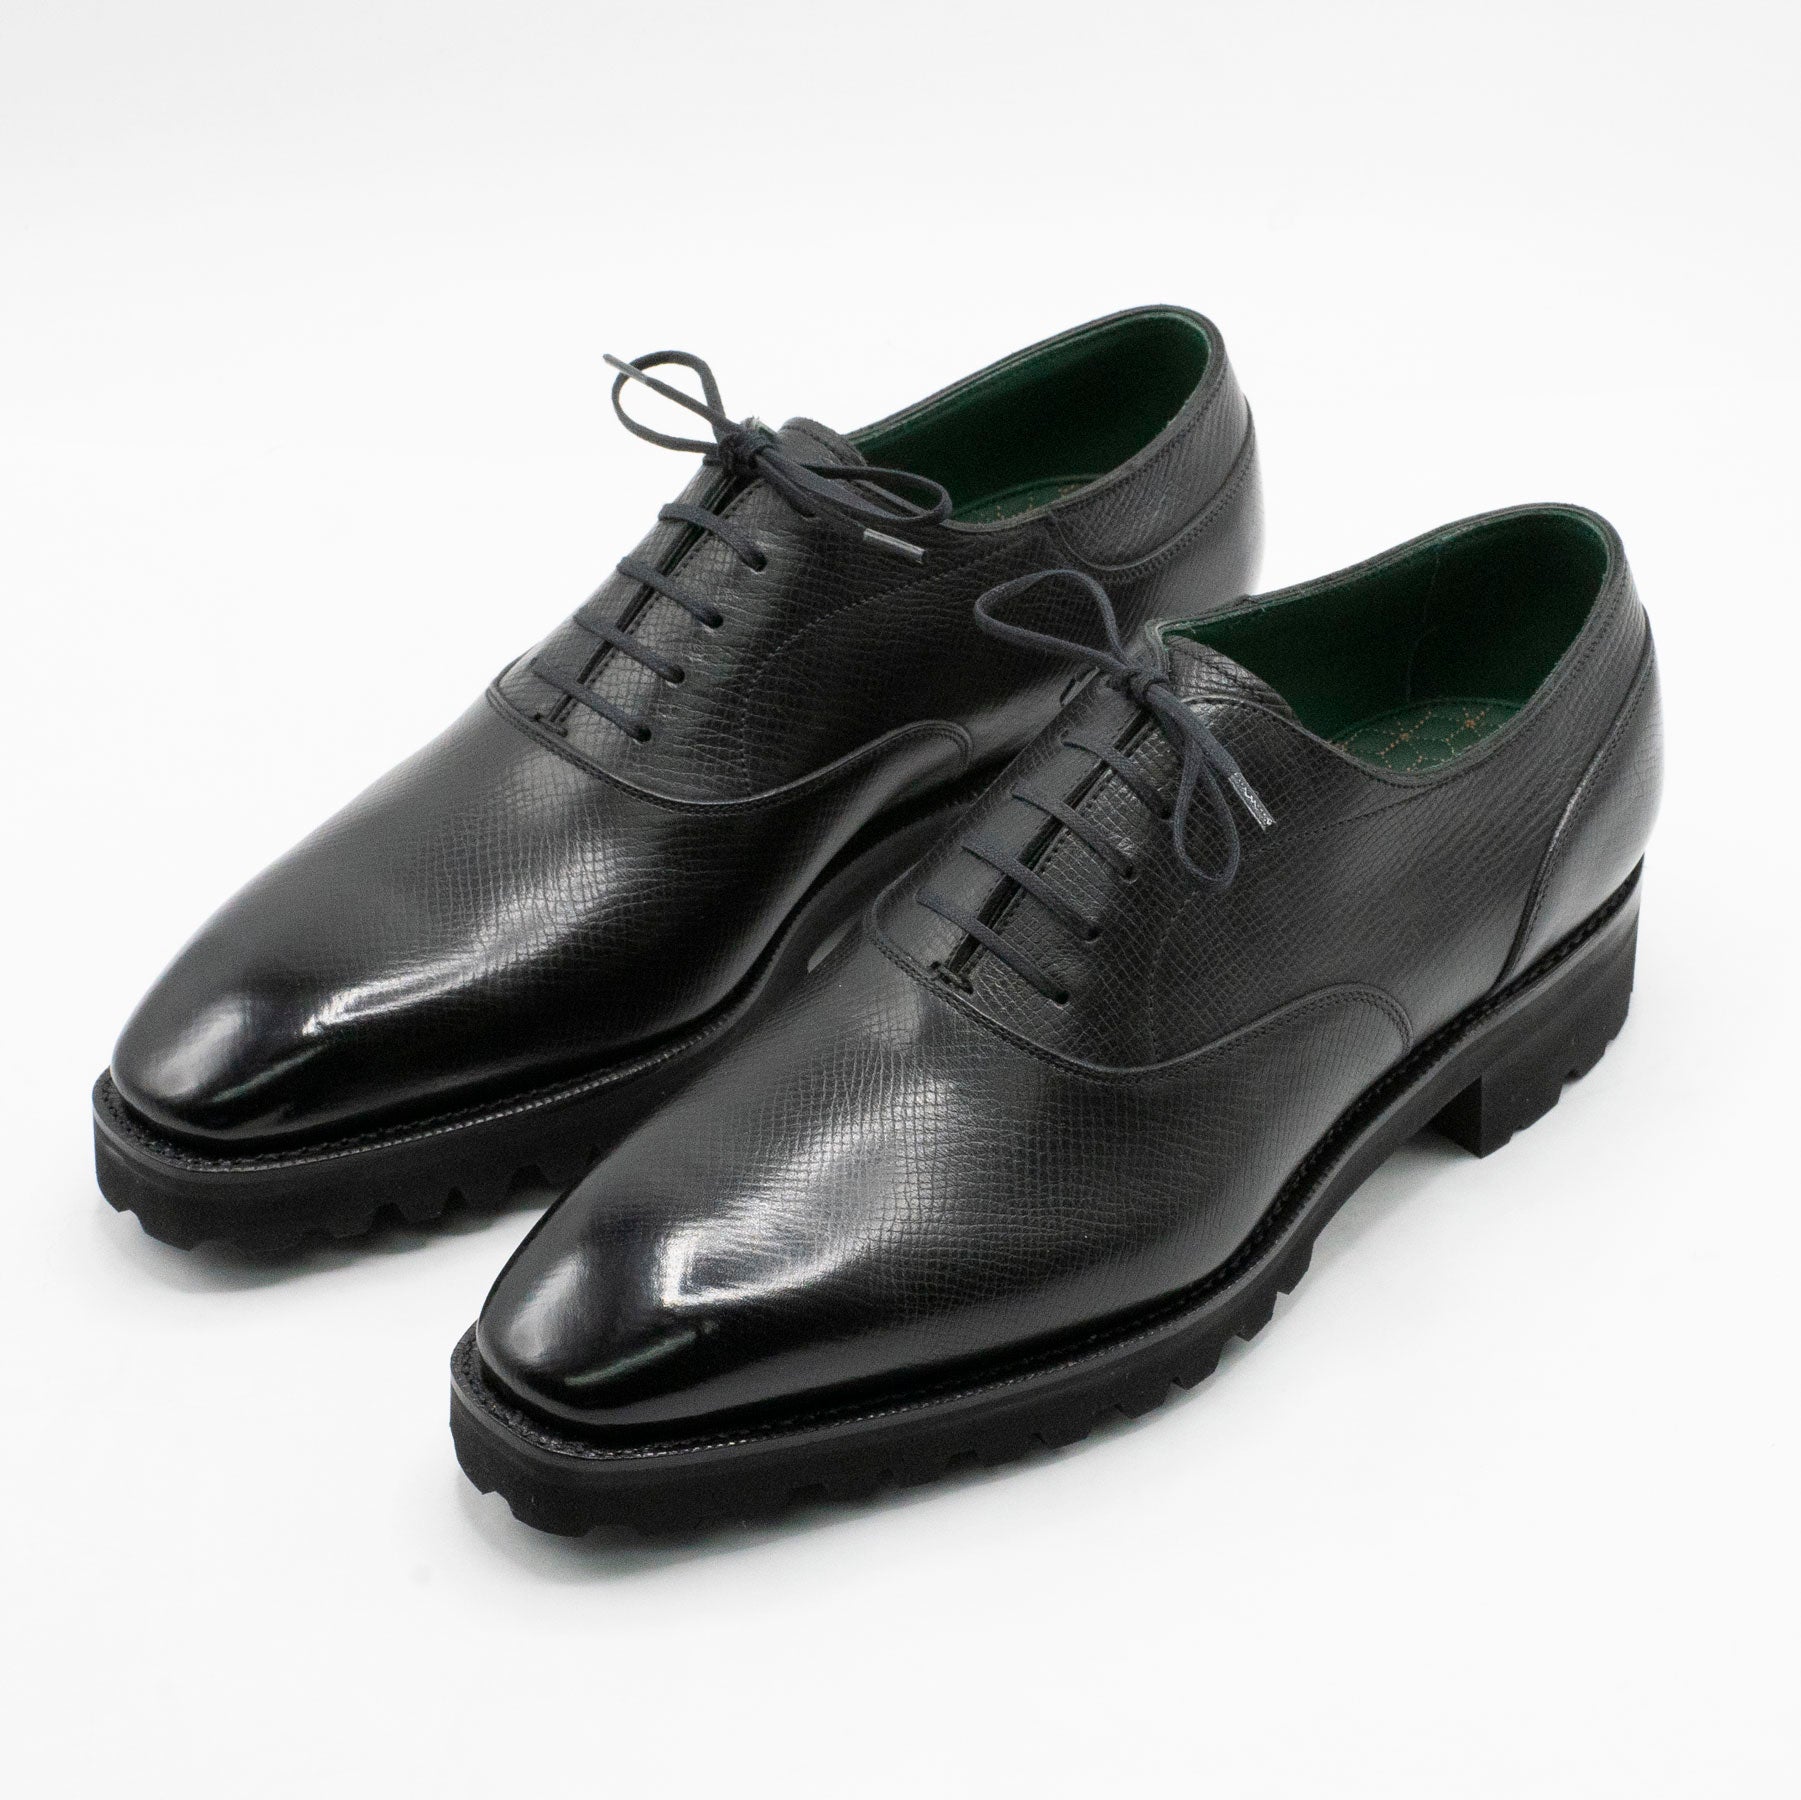 Oxford Simple Shoe MTO - Onyx Nappa Grain Leather